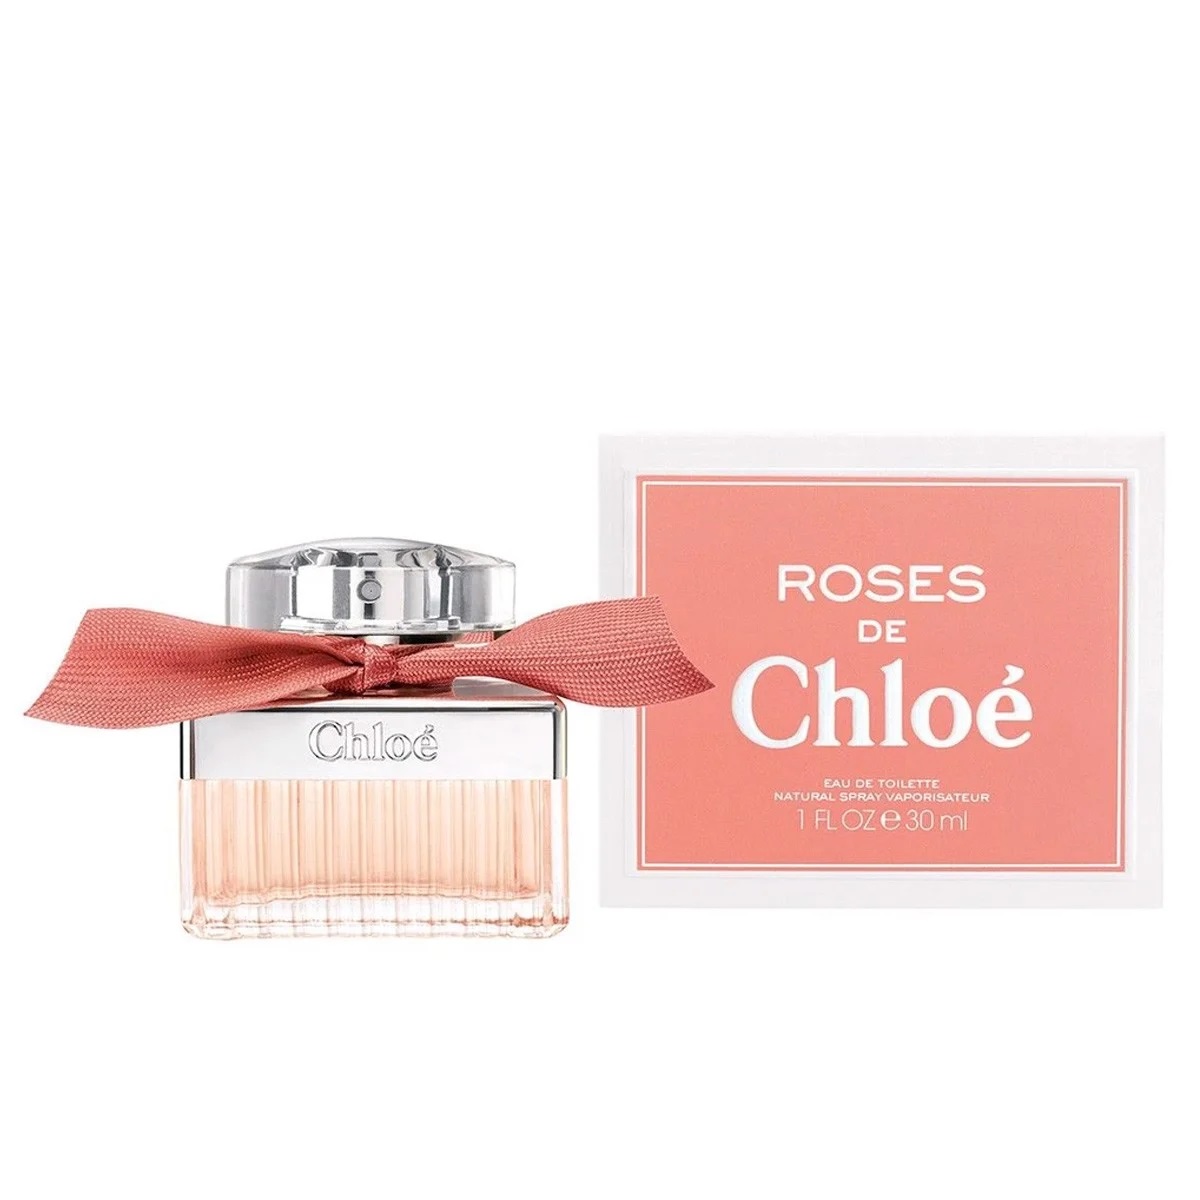 NƯỚC HOA NỮ CHLOE ROSES DE CHLOE EAU DE TOILETTE 1